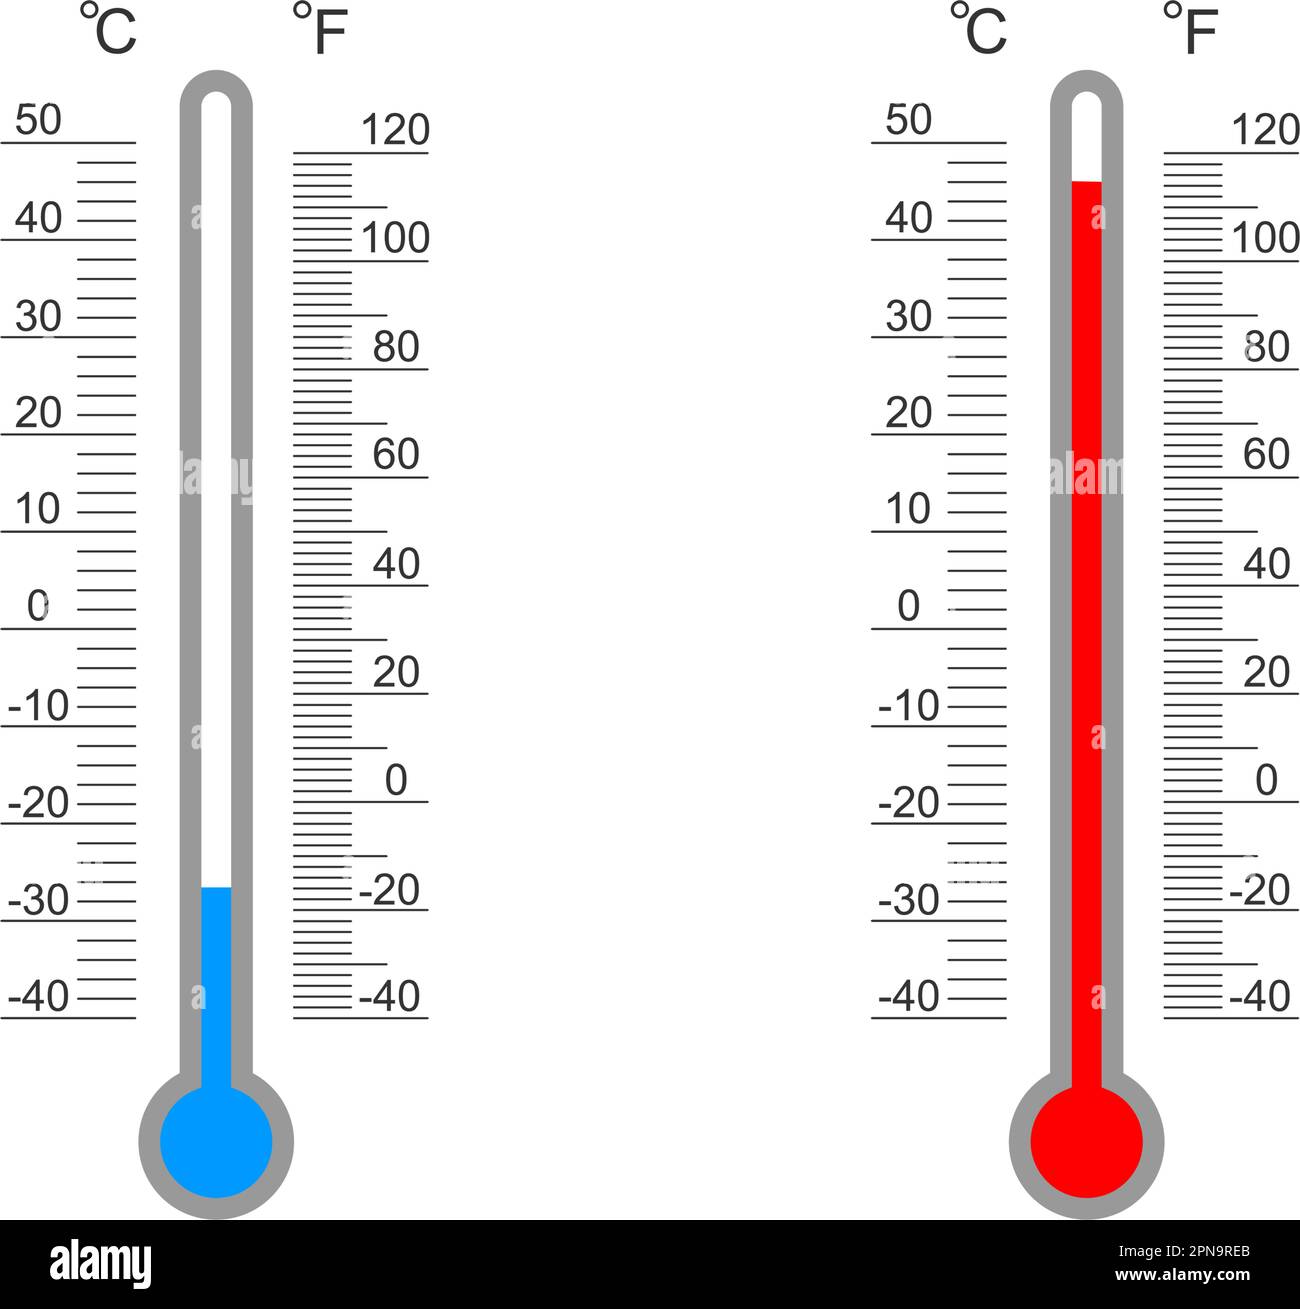 Thermomètre Chaud Froid Avec échelle Celsius Et Fahrenheit